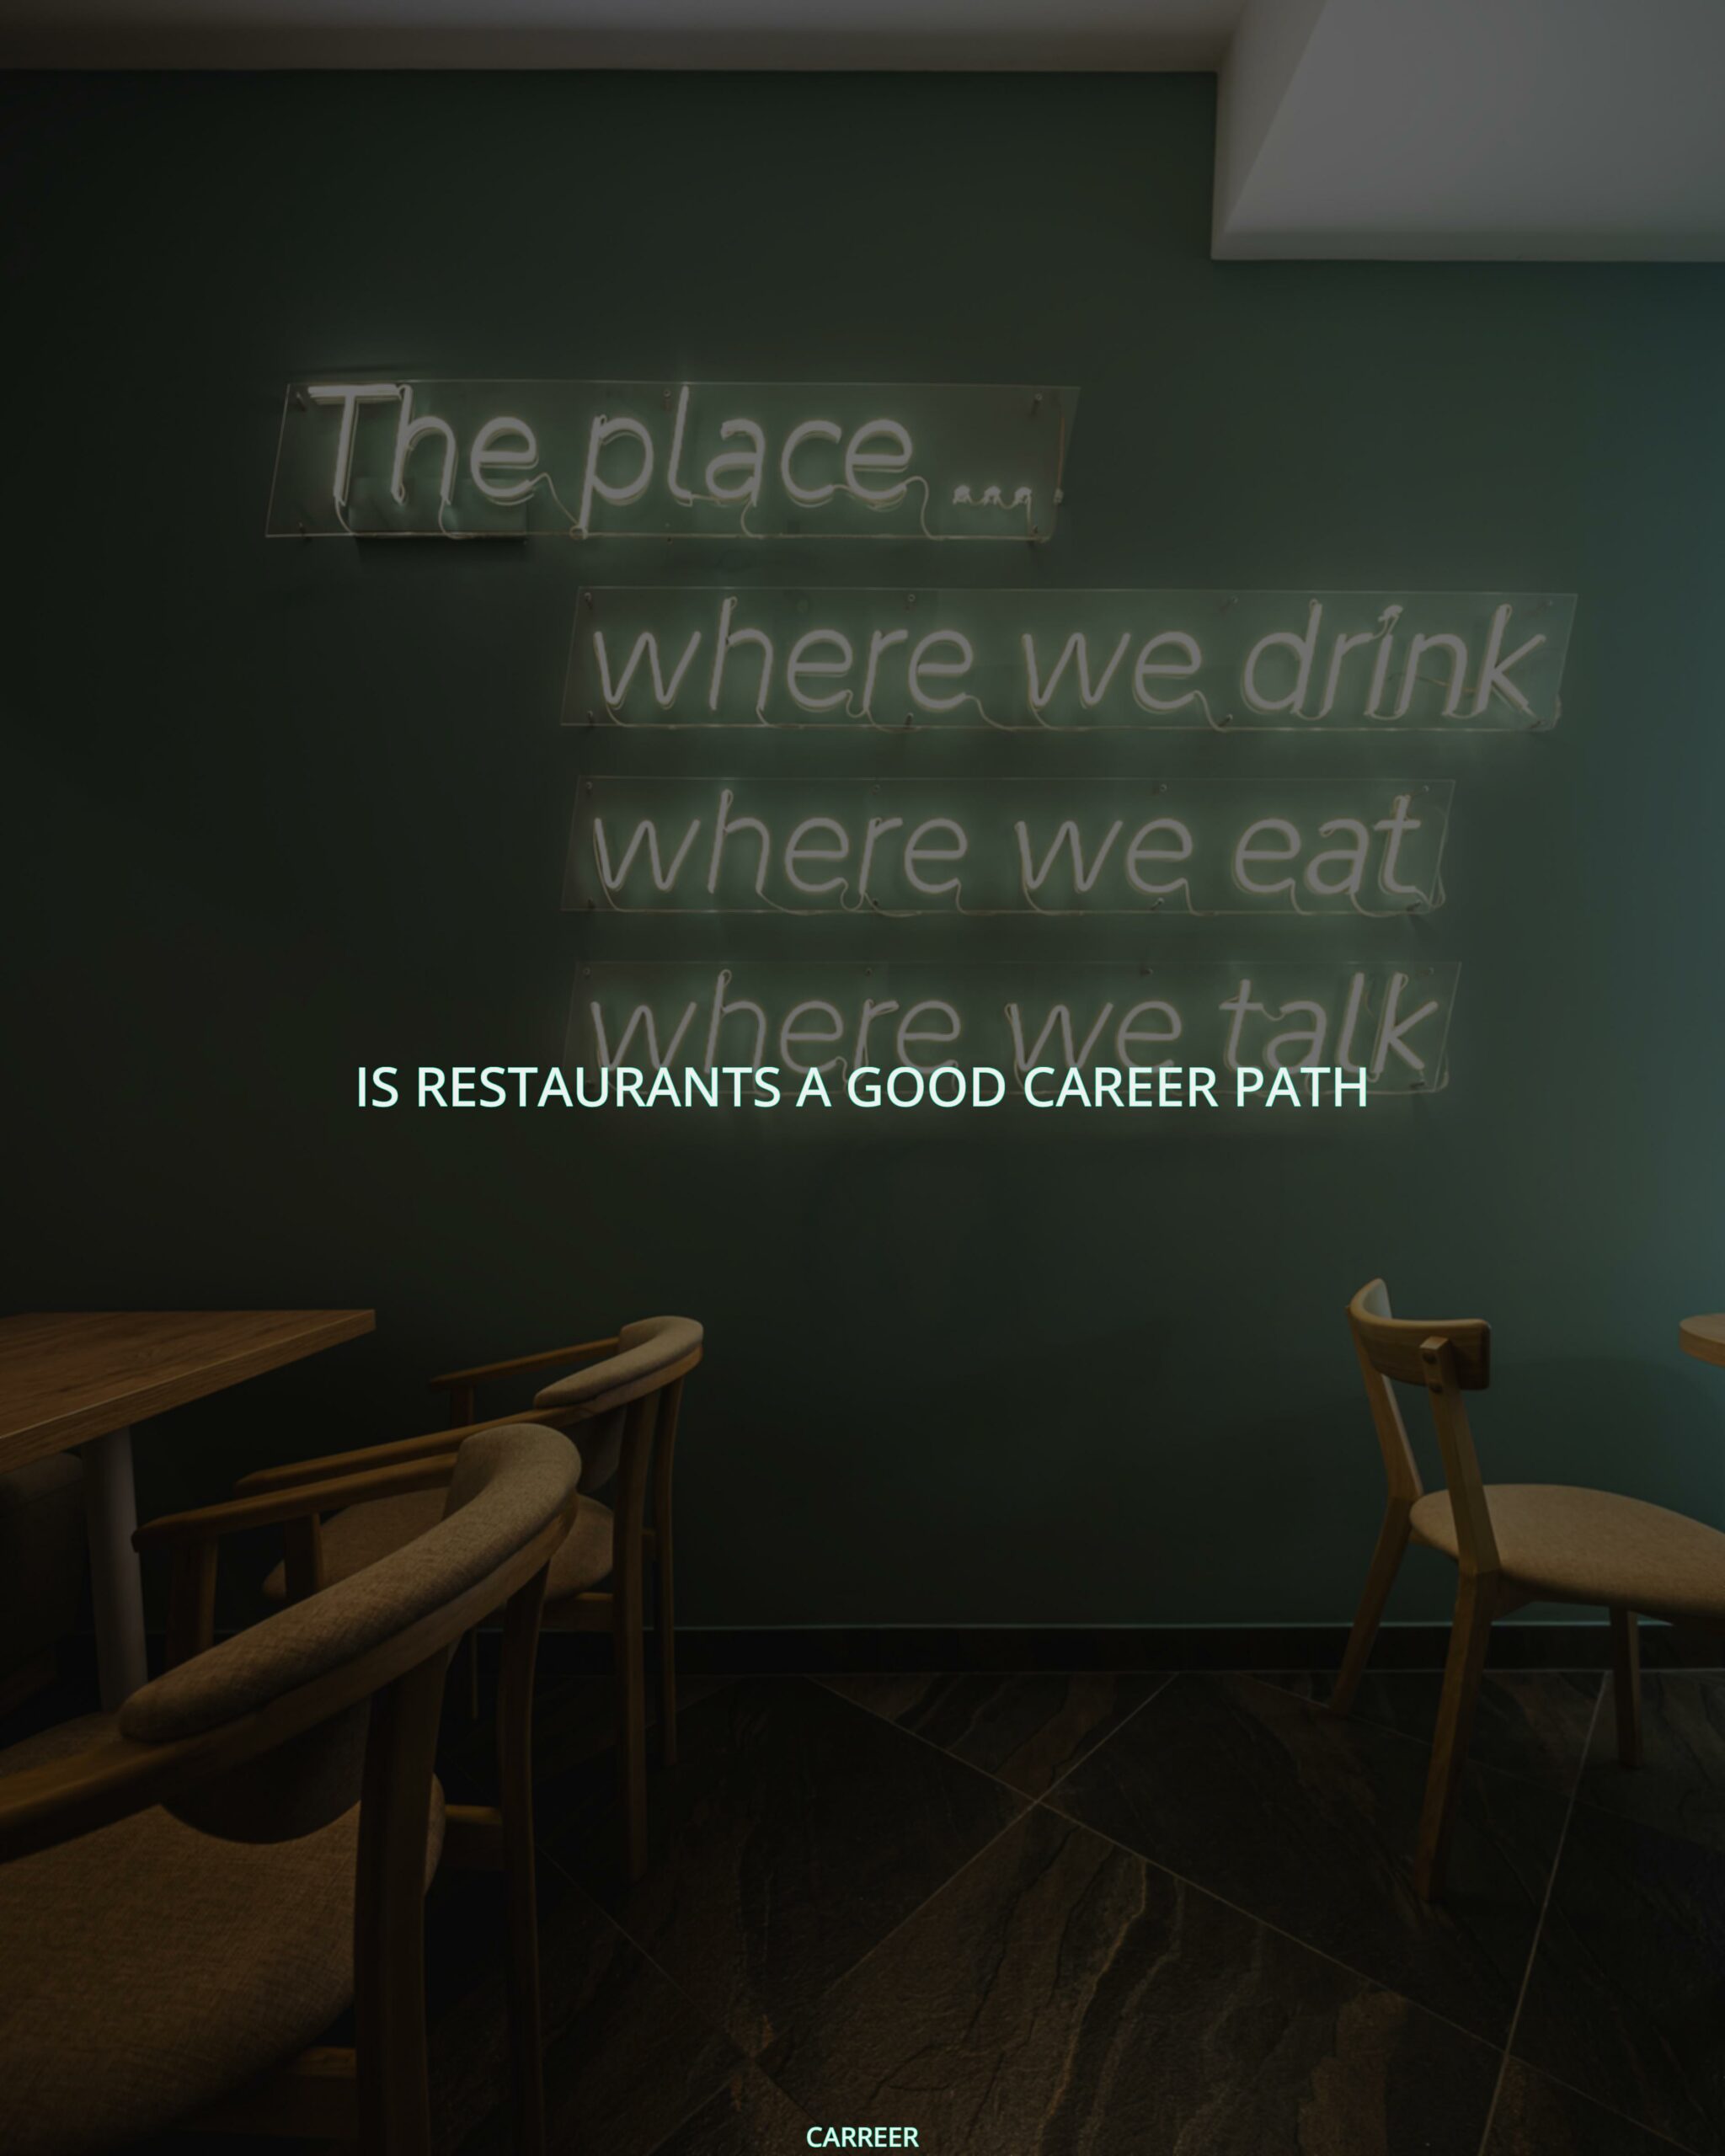 Is restaurants a good career path